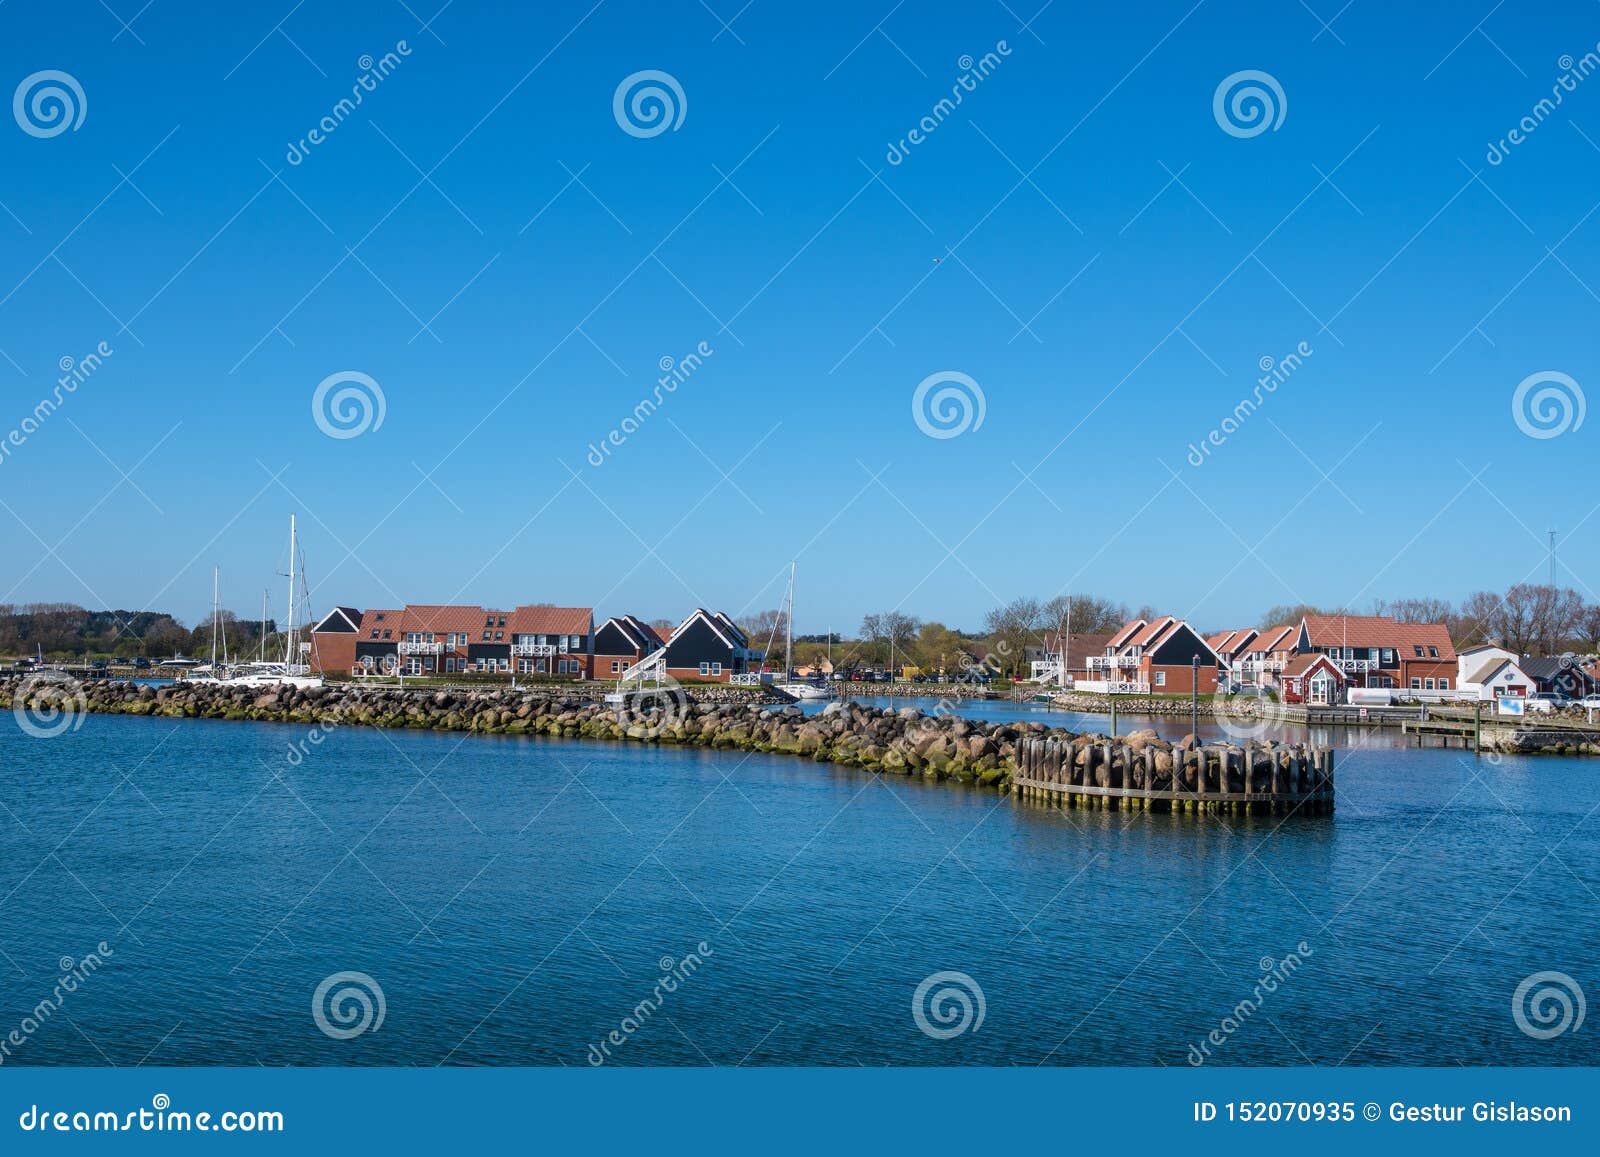 Klintholm Havn - 5 mai 2018 : la marine de yacht dans le port de Klintholm au Danemark